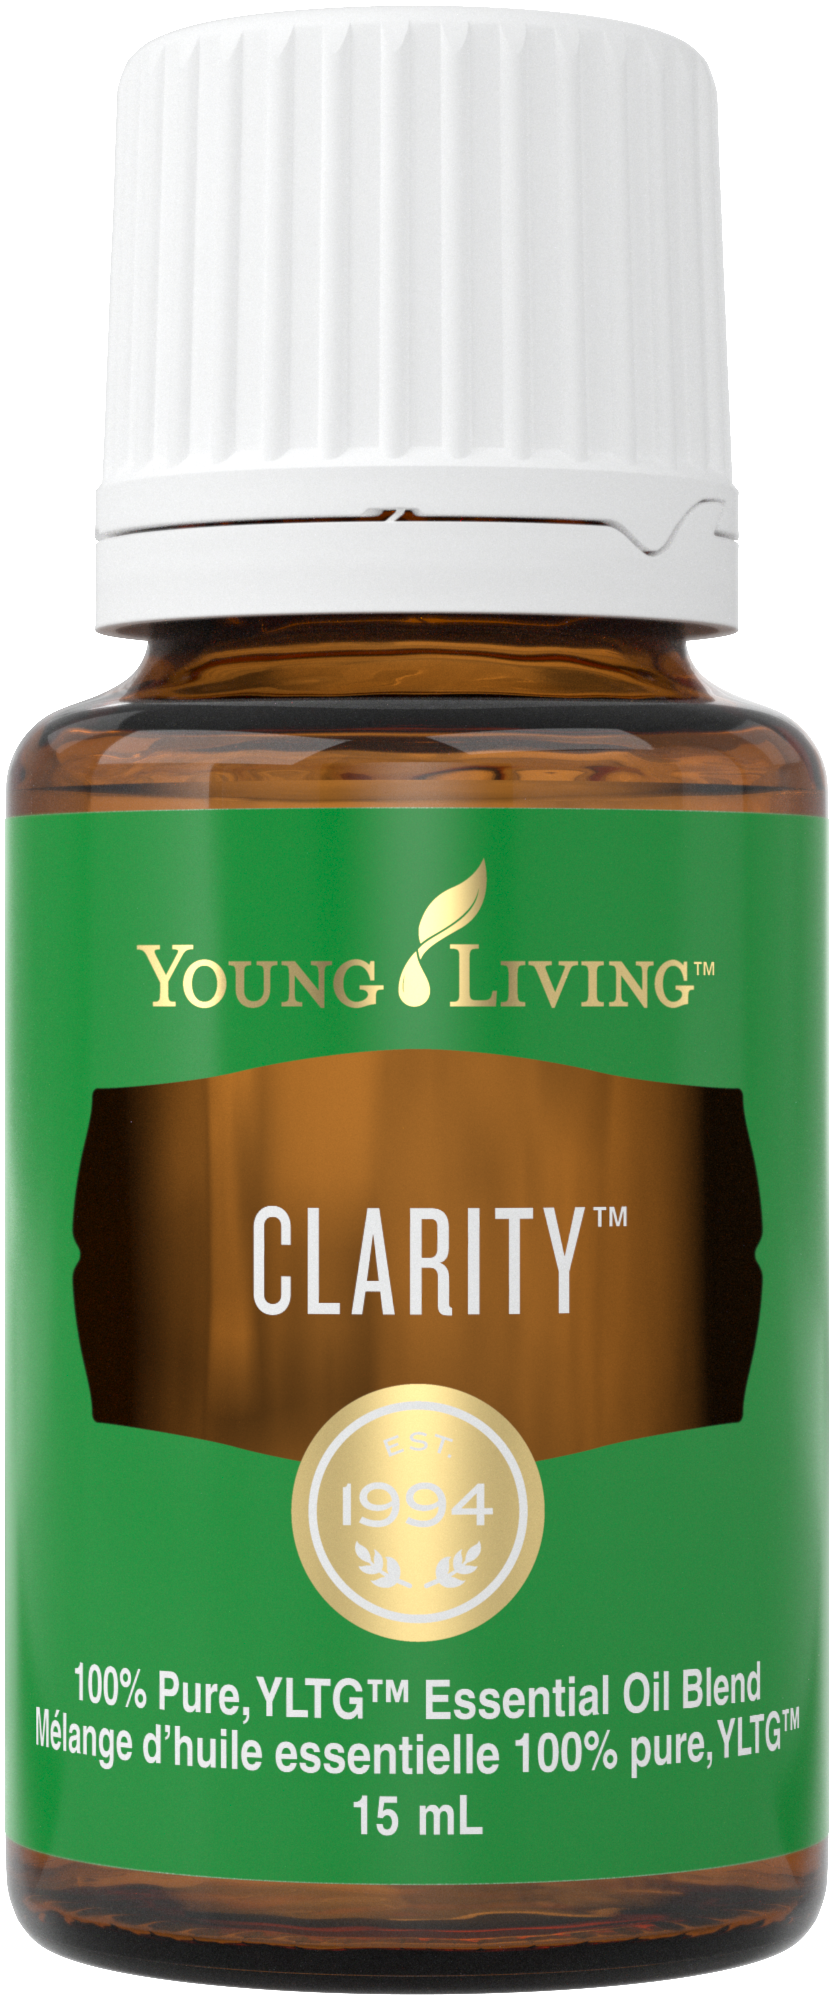 clarity essential oil